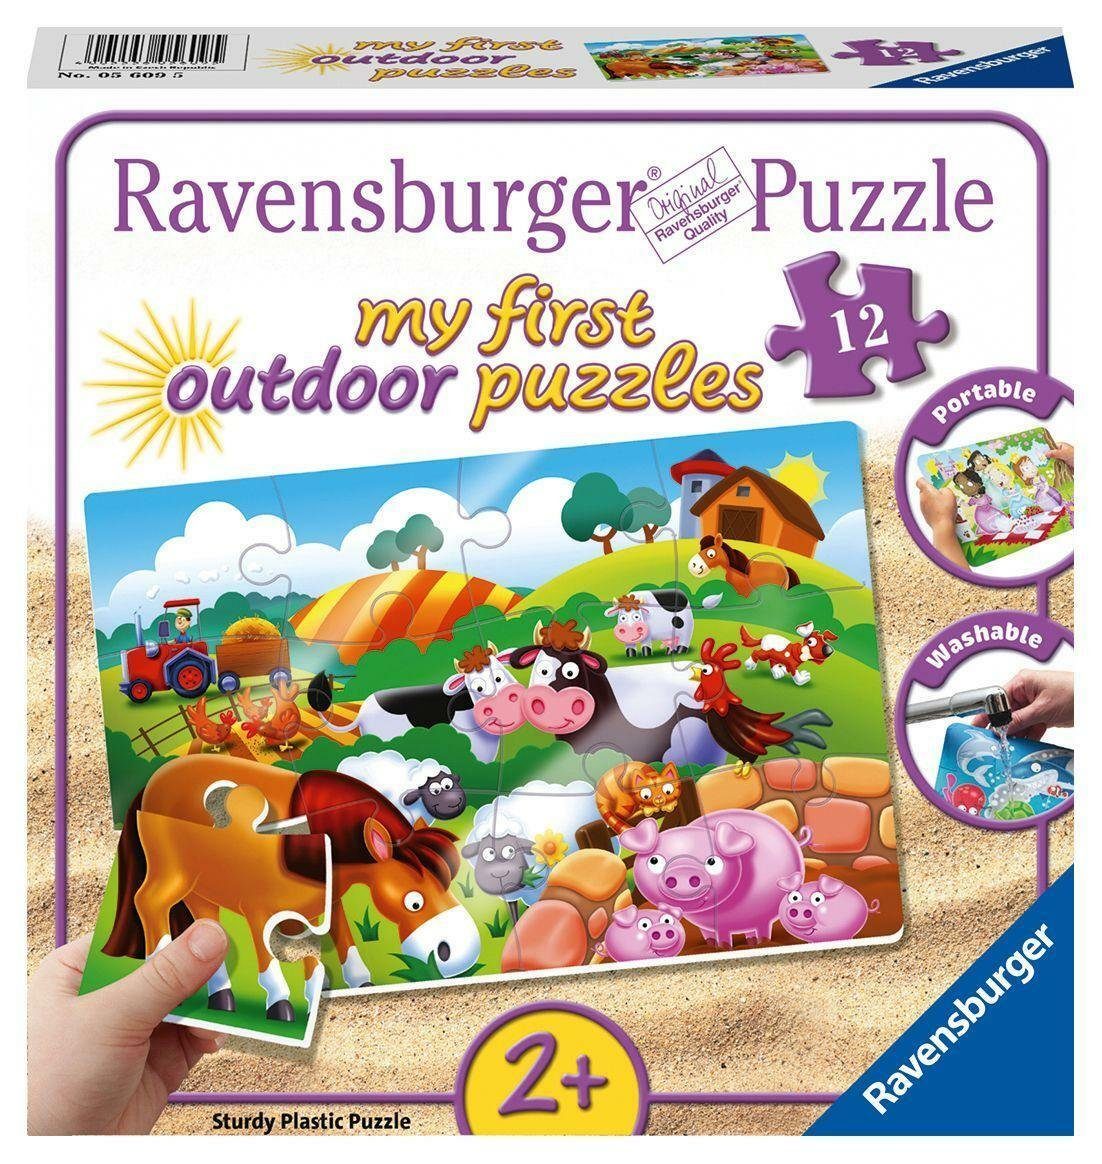 Ravensburger Puzzle 12 Puzzle Bauernhoftiere. Liebe Teile, Puzzleteile 12